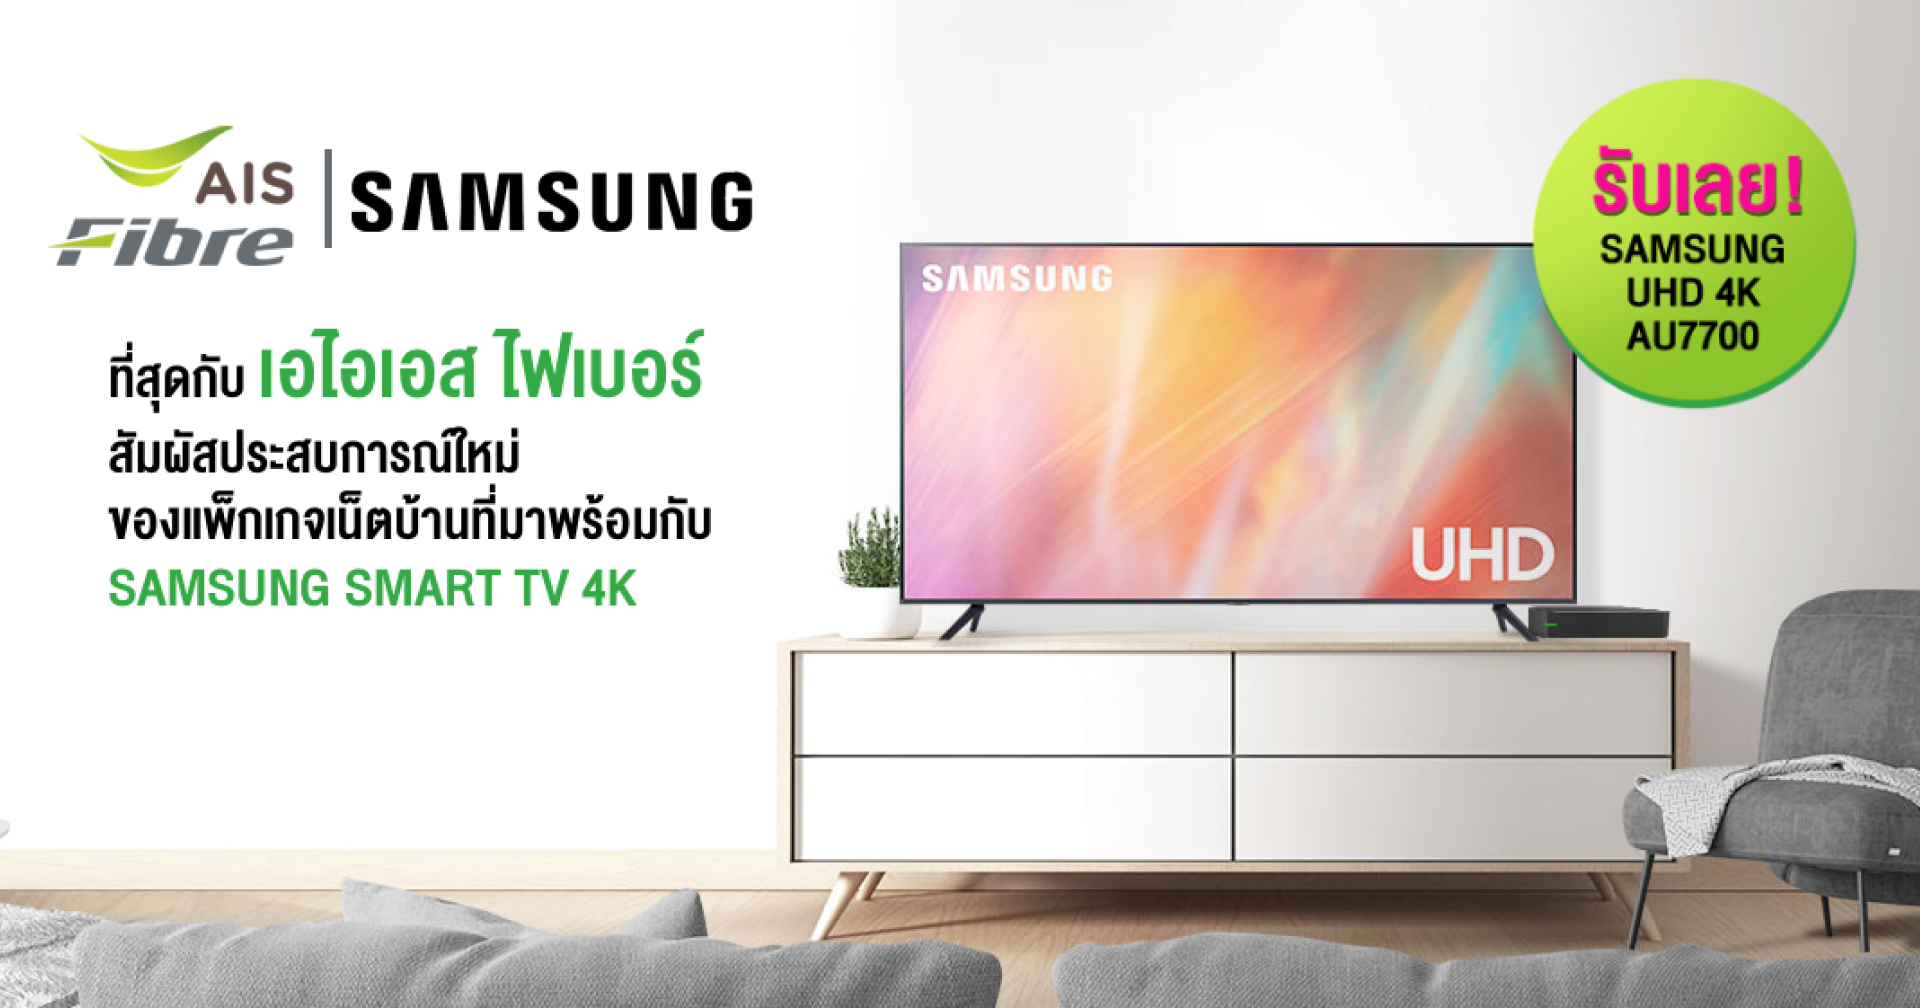 AIS Fibre ควง Samsung จัดโปรเน็ตบ้านพร้อมสมาร์ตทีวี